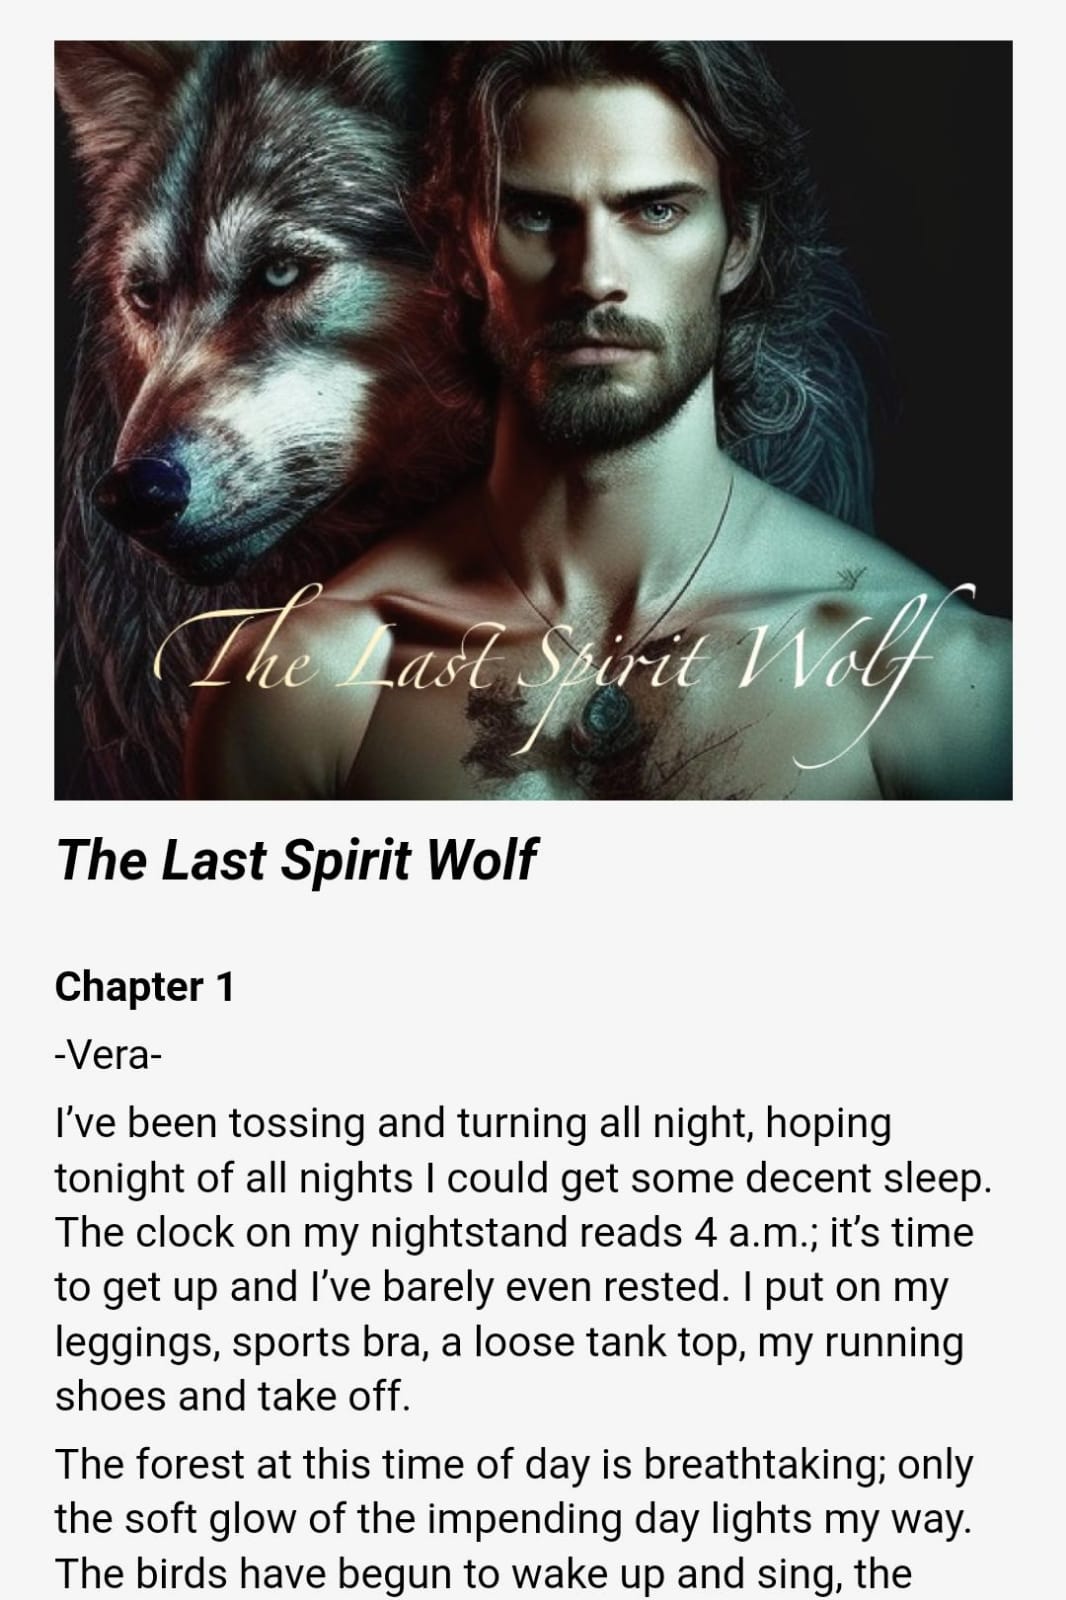 The Last Spirit Wolf by Elena Norwood Novel Full Episode